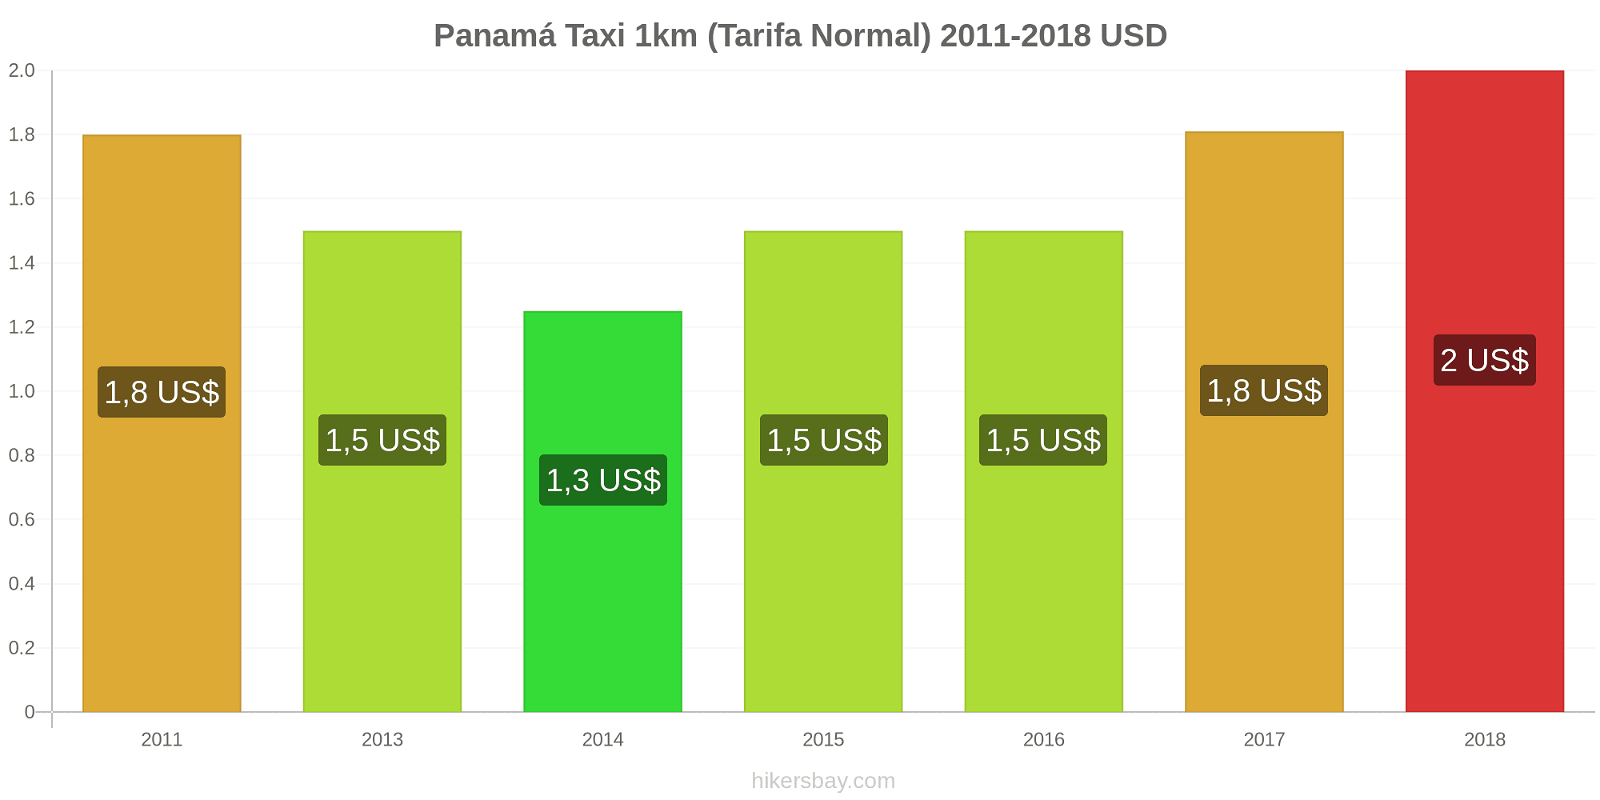 Panamá cambios de precios Taxi 1km (tarifa normal) hikersbay.com